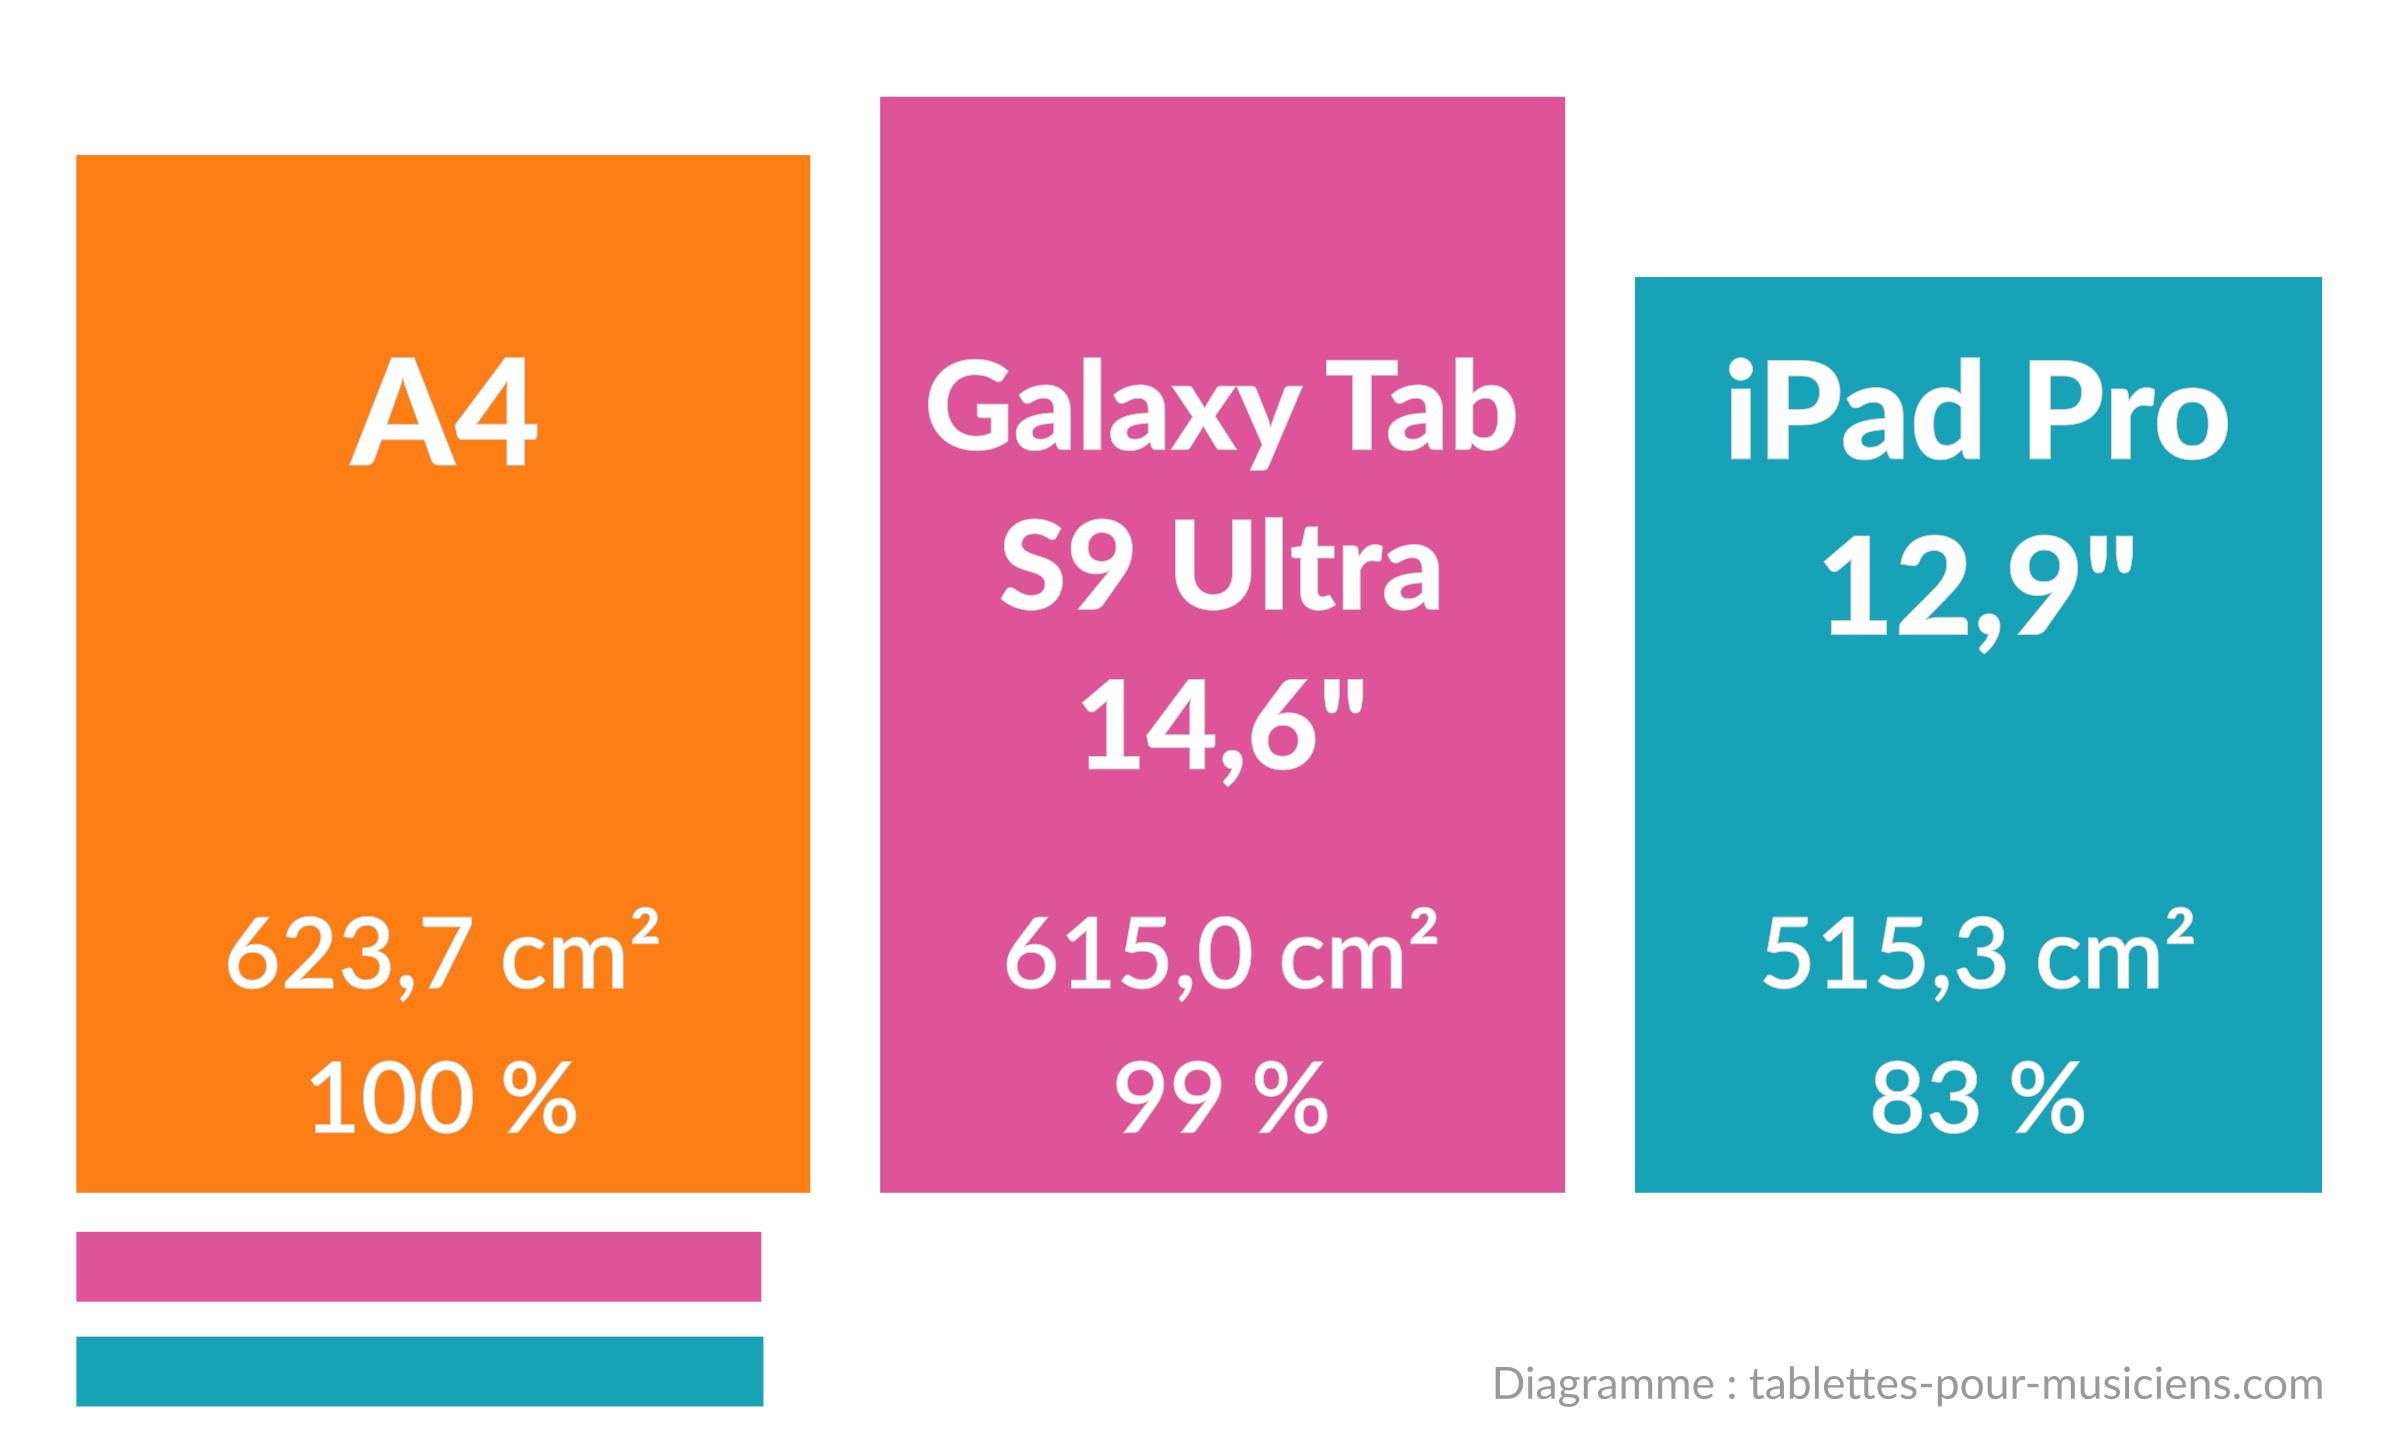 Tablettes pour musiciens - Taille d'écran pour musique - A4 vs Samsung Galaxy S9 Ultra vs iPad Pro